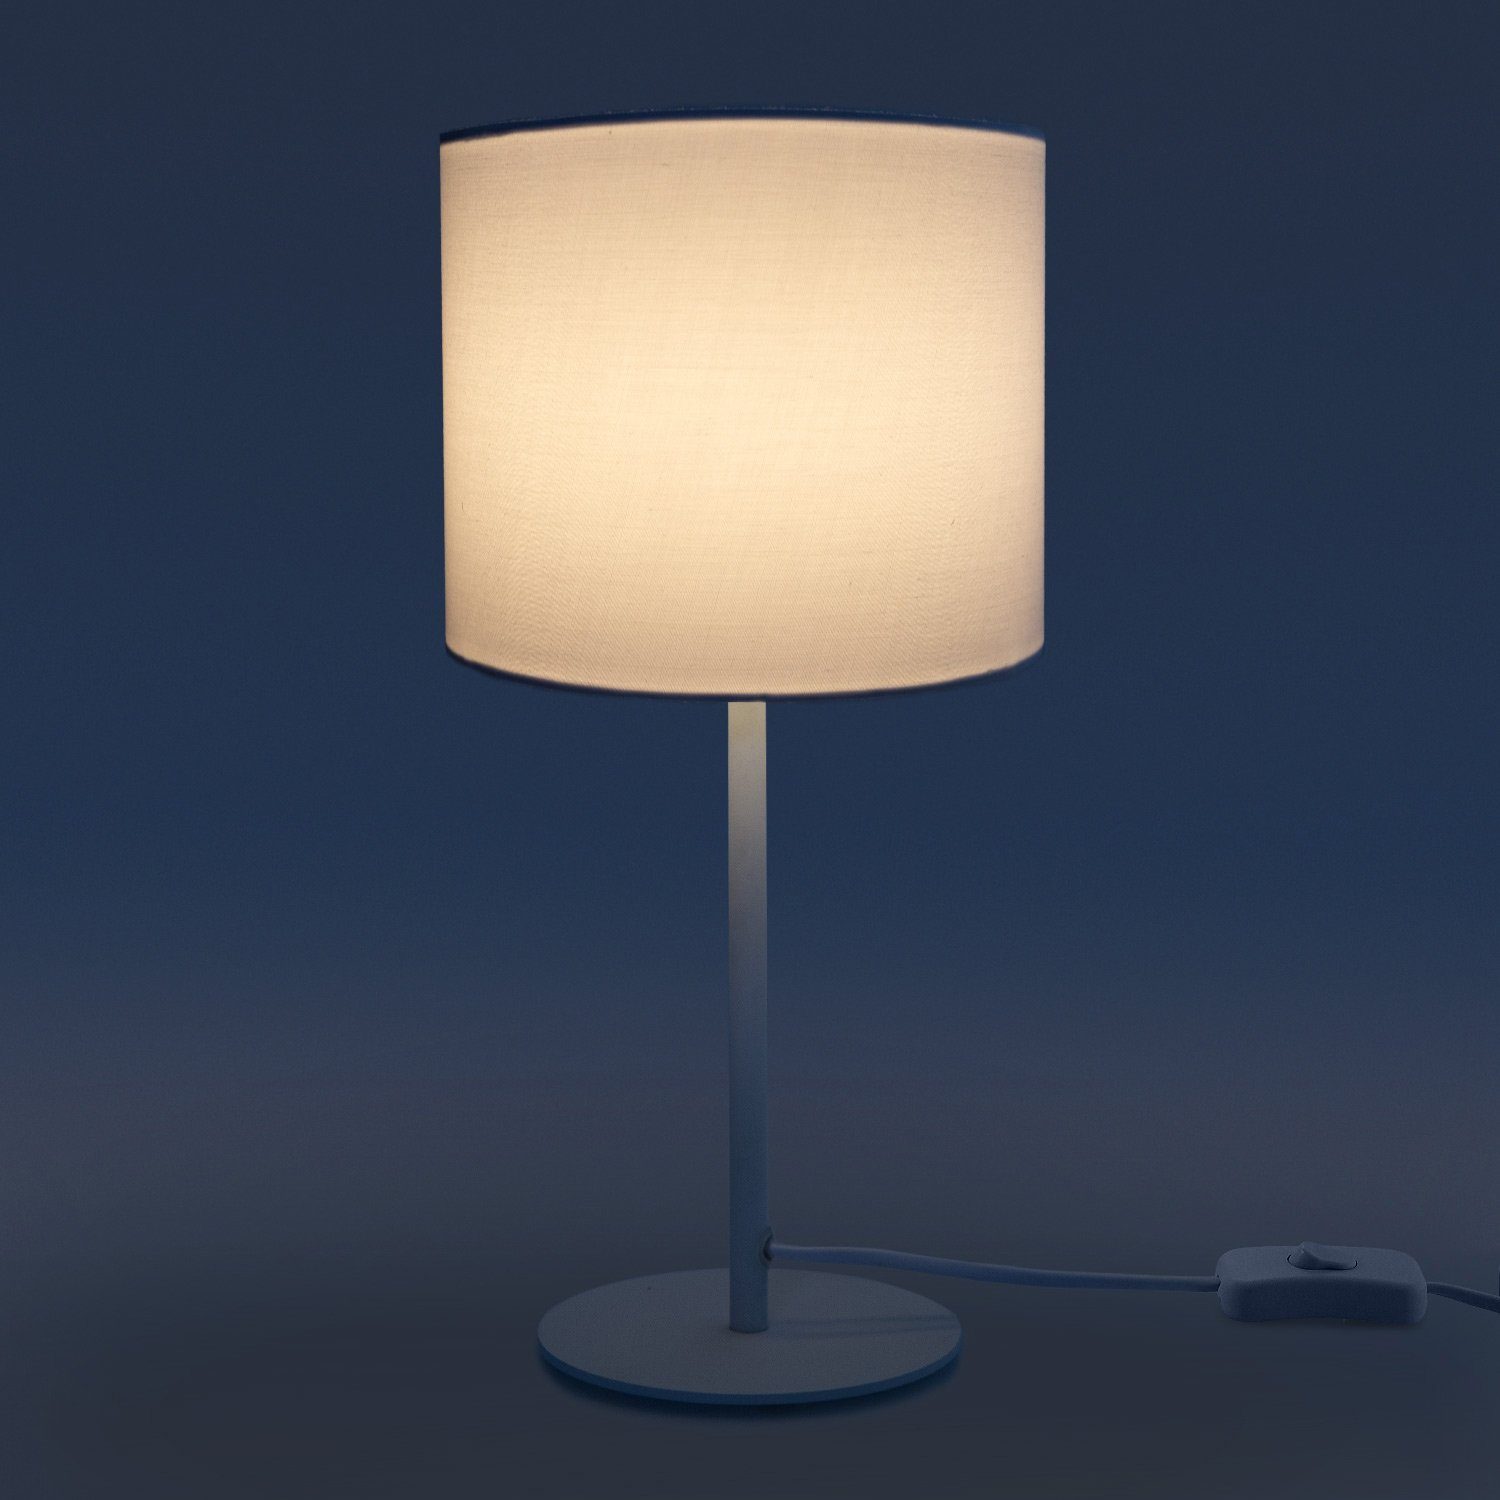 Paco Uni Deko Color, Schlafzimmer, Lampe, Tischleuchte Wohnzimmer Für Leuchtmittel, Unifarben, Home ohne Und LED E14